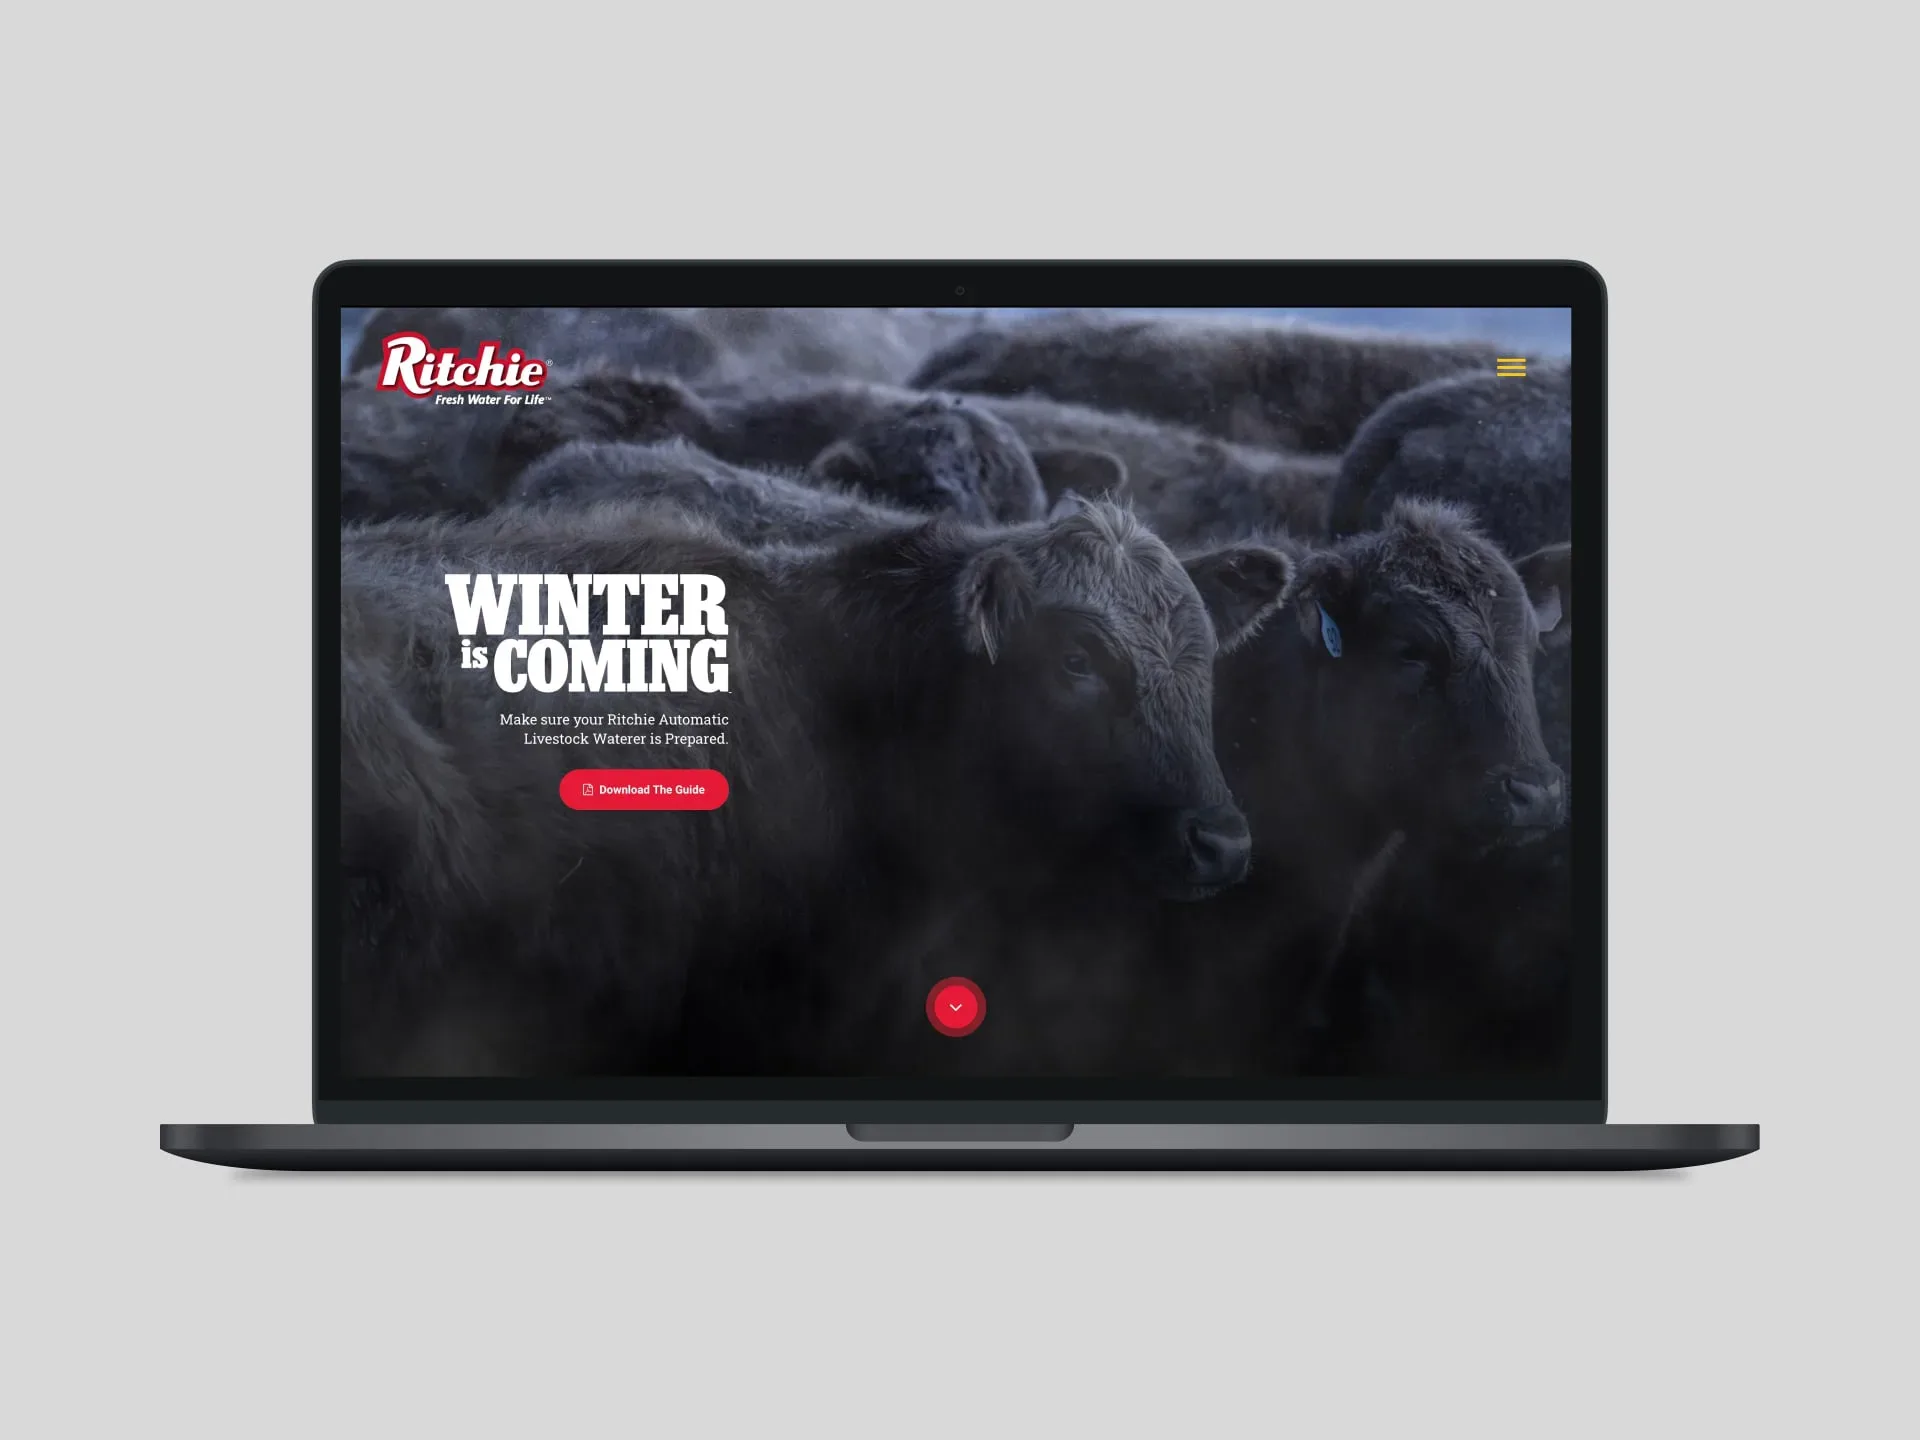 Ritchie winter is coming desktop